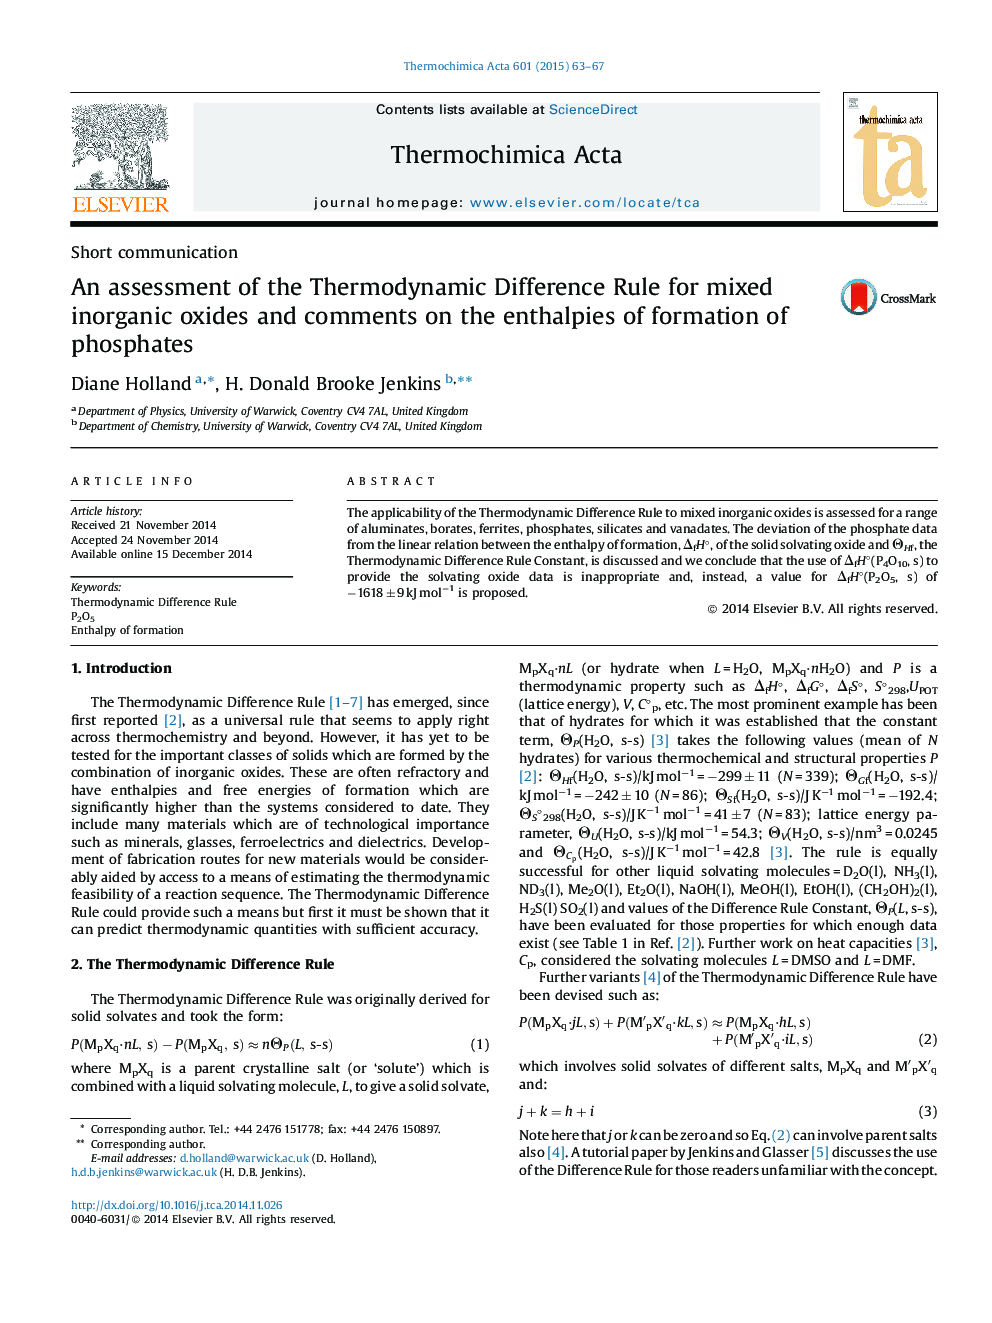 ارزیابی قانون ترمودینامیک اختلاف برای اکسید های غیر ارگانیکی مخلوط و نظرات در مورد آنتولپی های تشکیل فسفات ها 